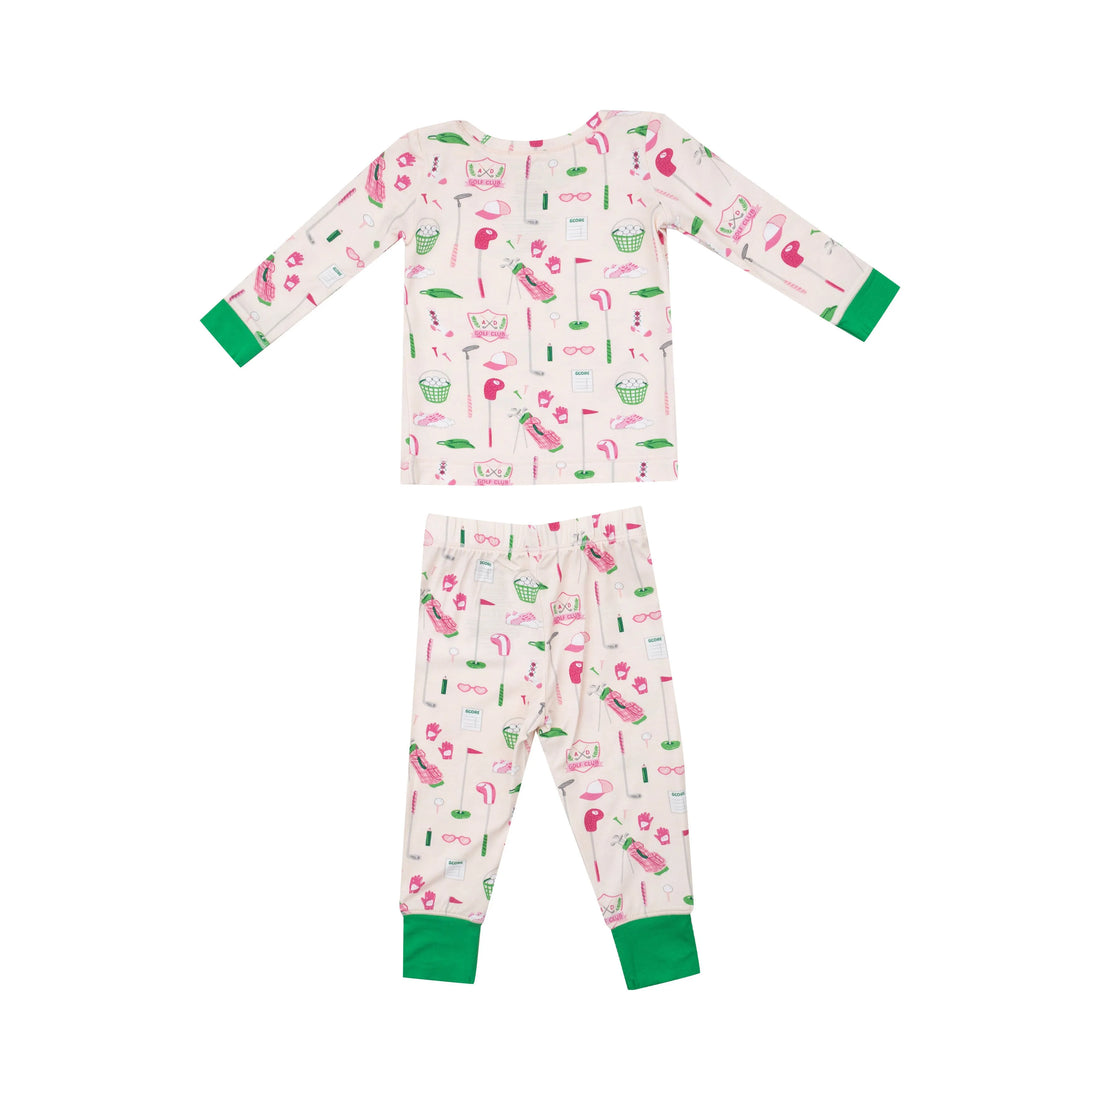 pink 2pc pajama set with golf